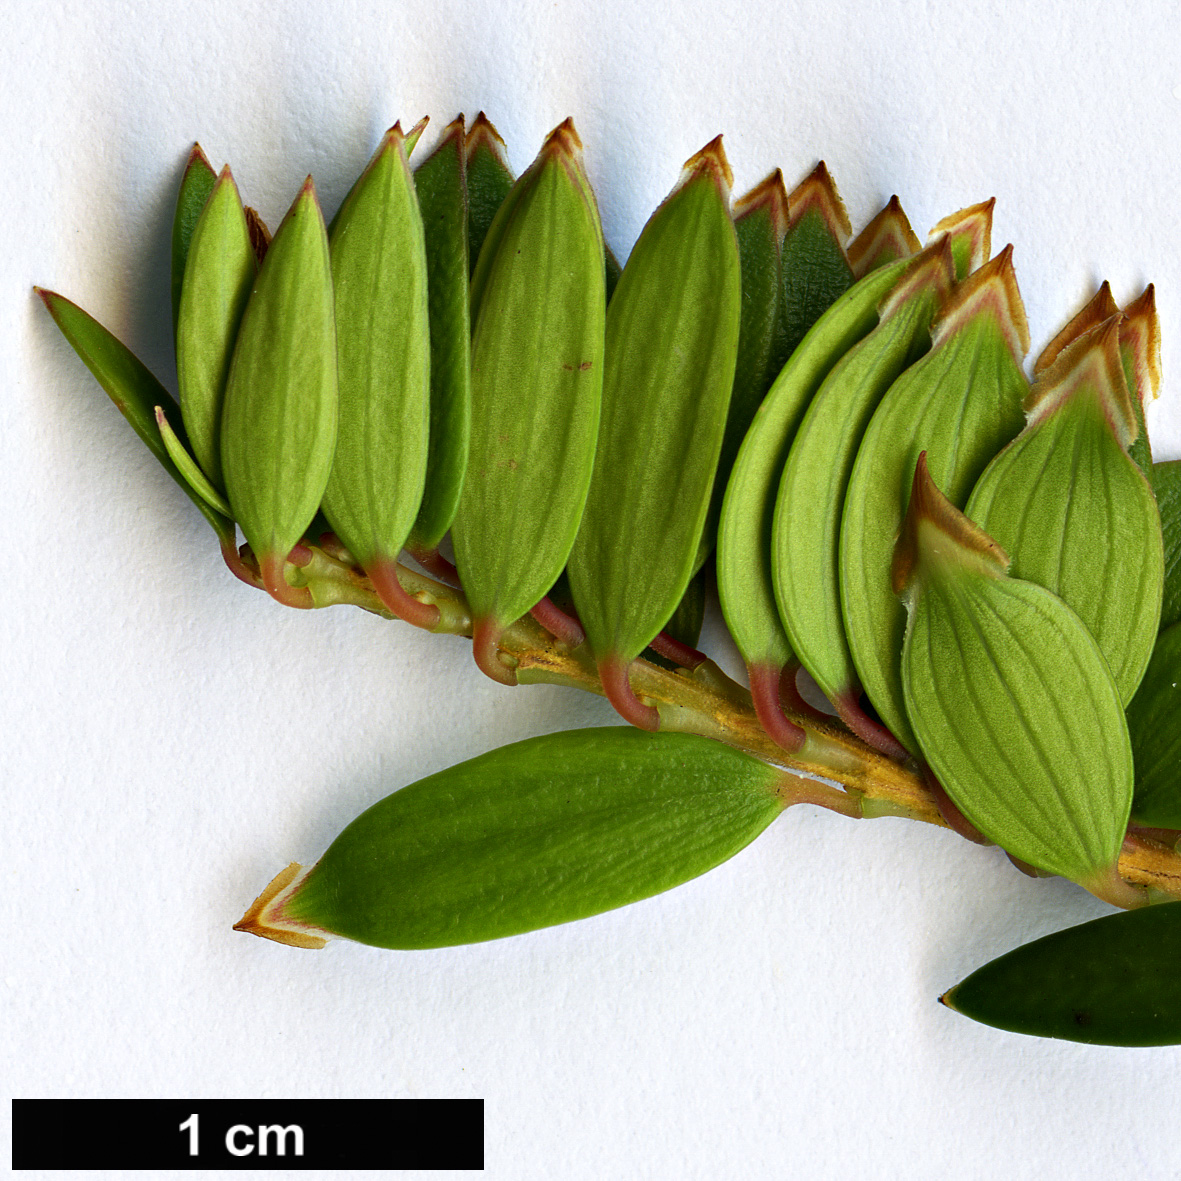 High resolution image: Family: Ericaceae - Genus: Trochocarpa - Taxon: disticha